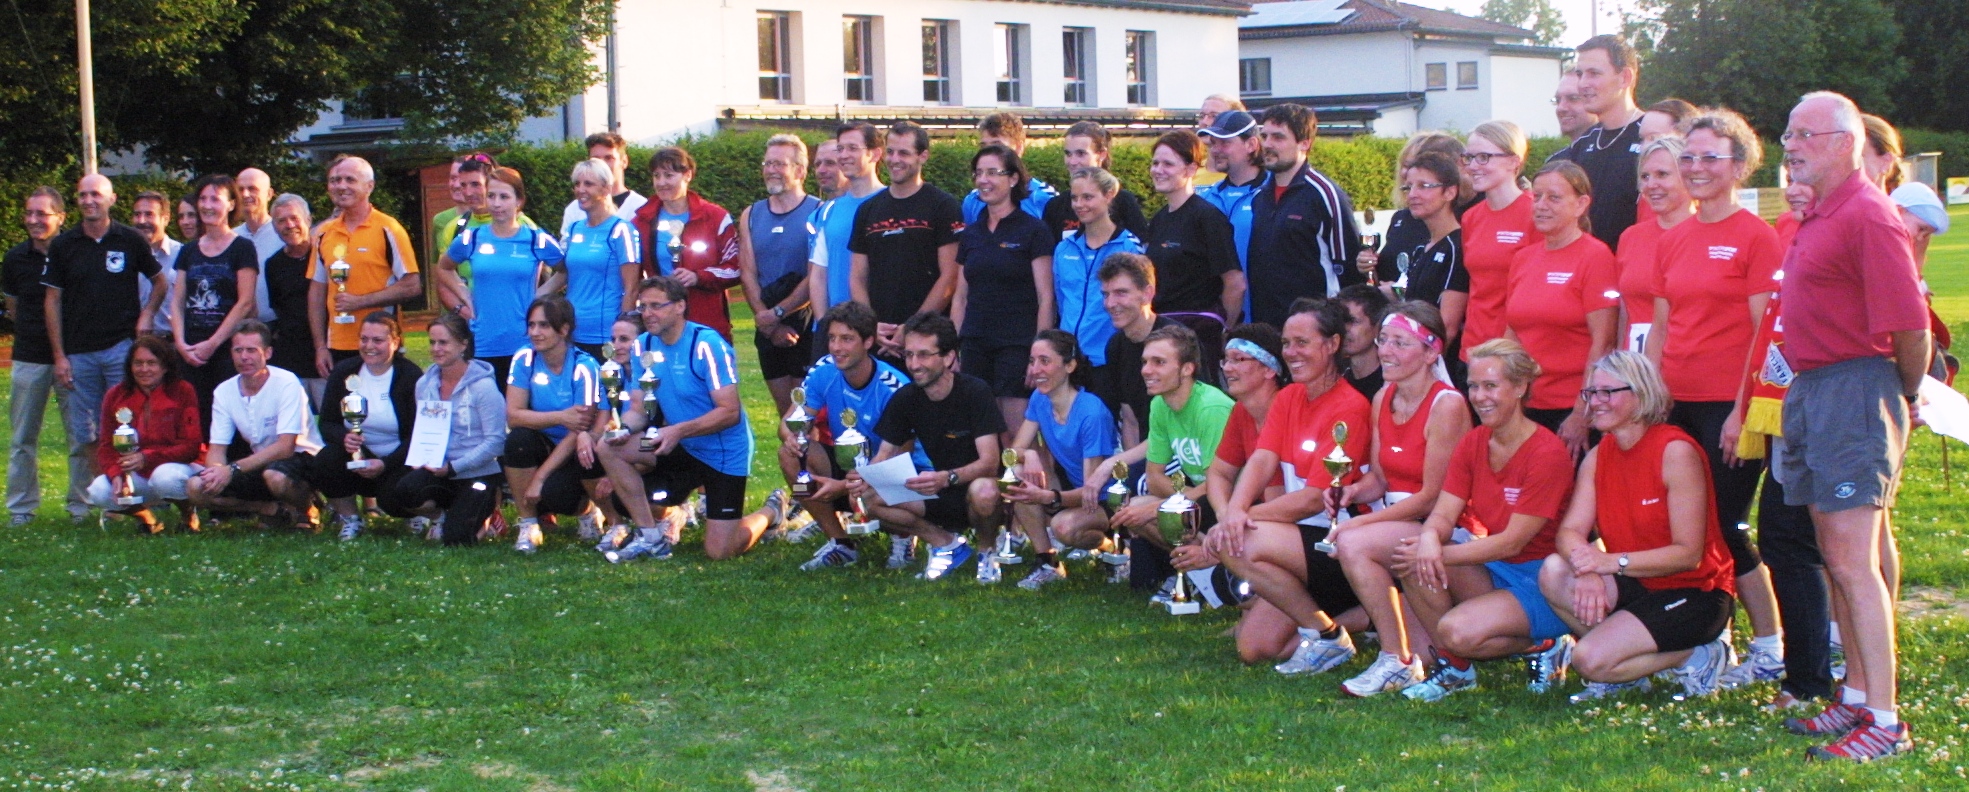 Leichtathletikteam der Universität Passau gewinnt den Passauer Behördencup 2013